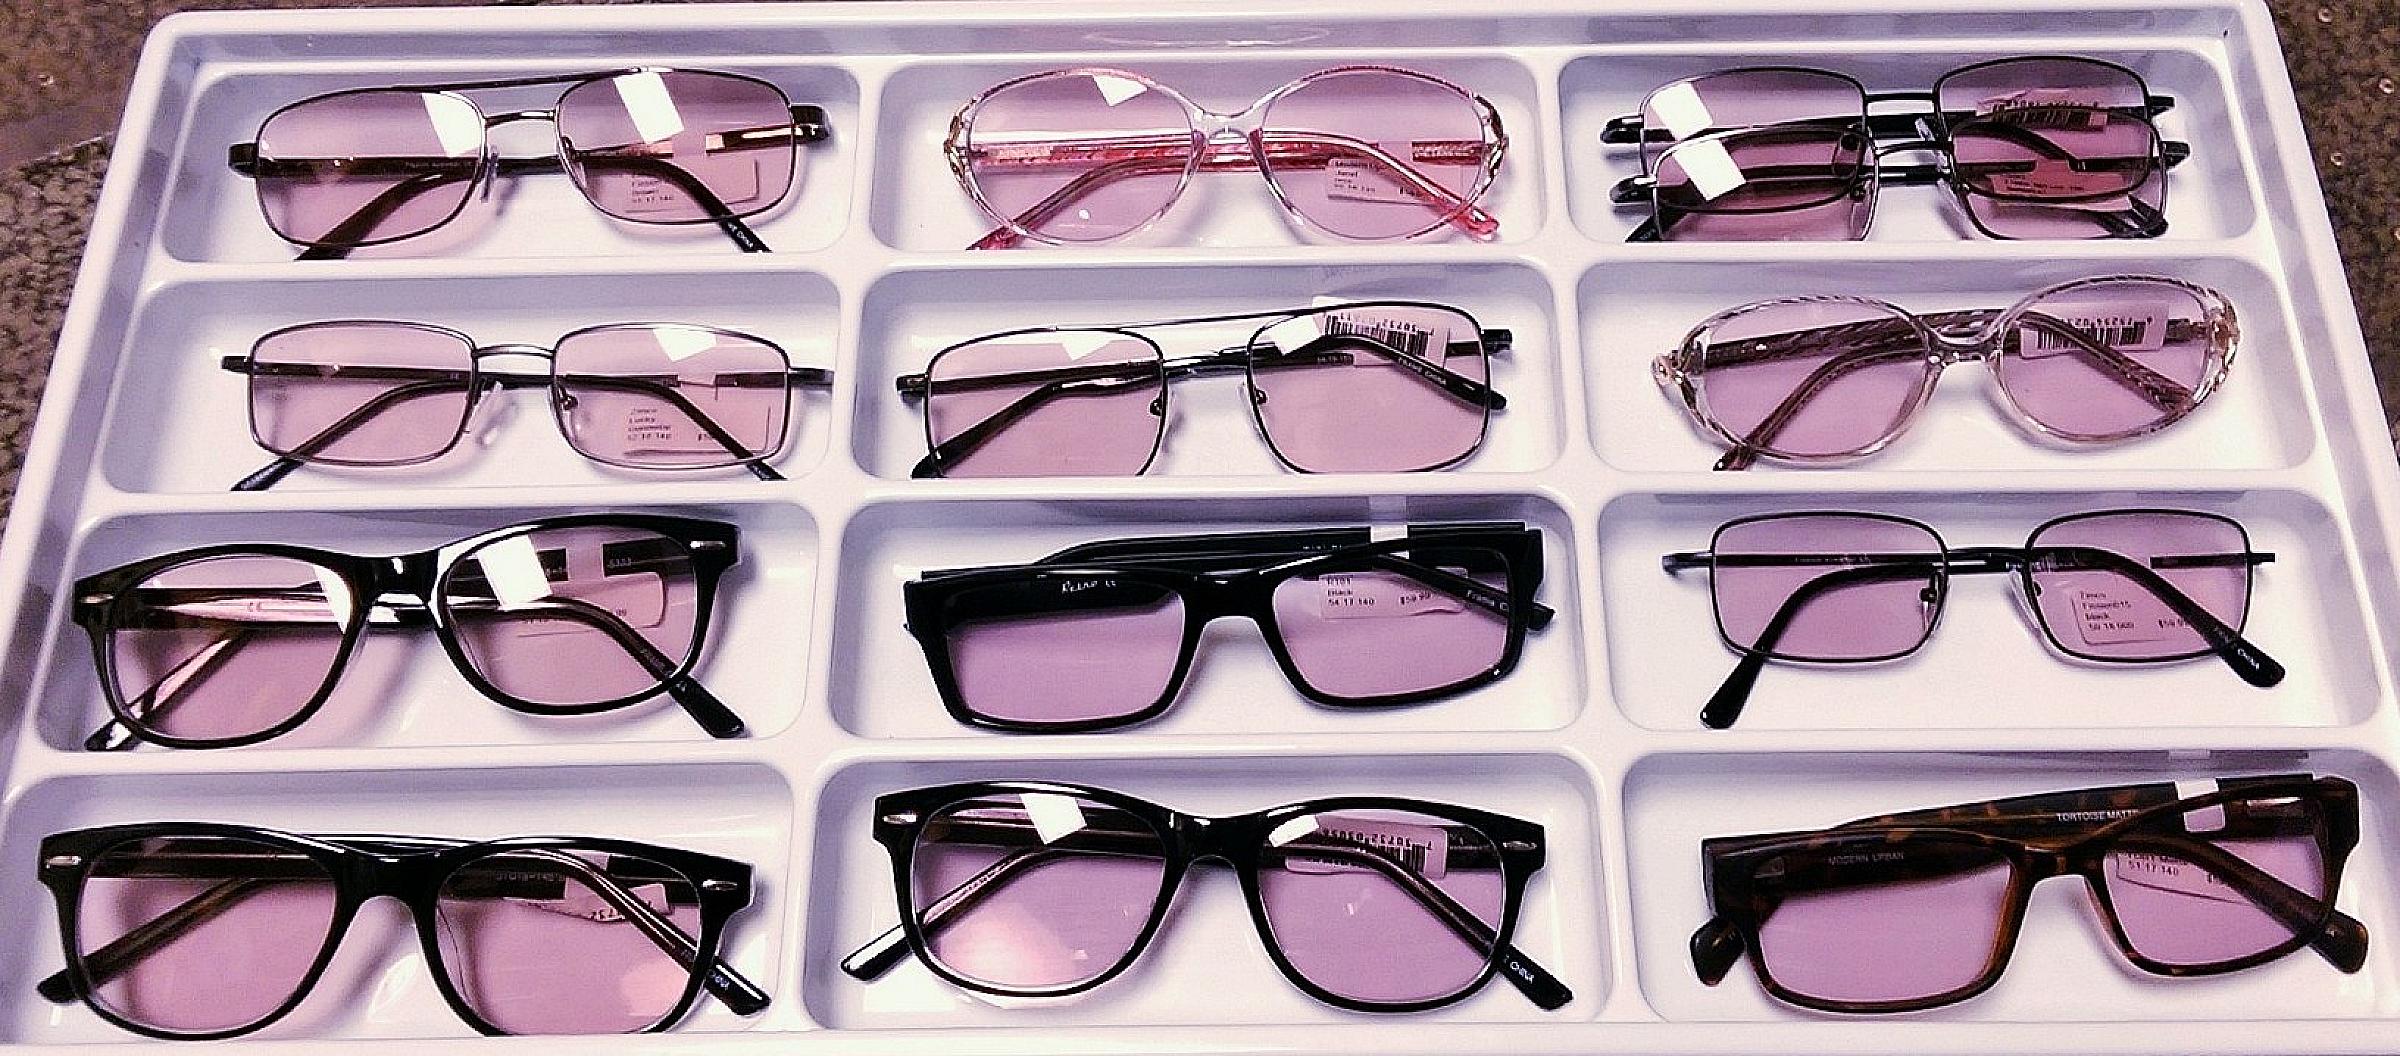 Tray of FL-41 eyeglasses.